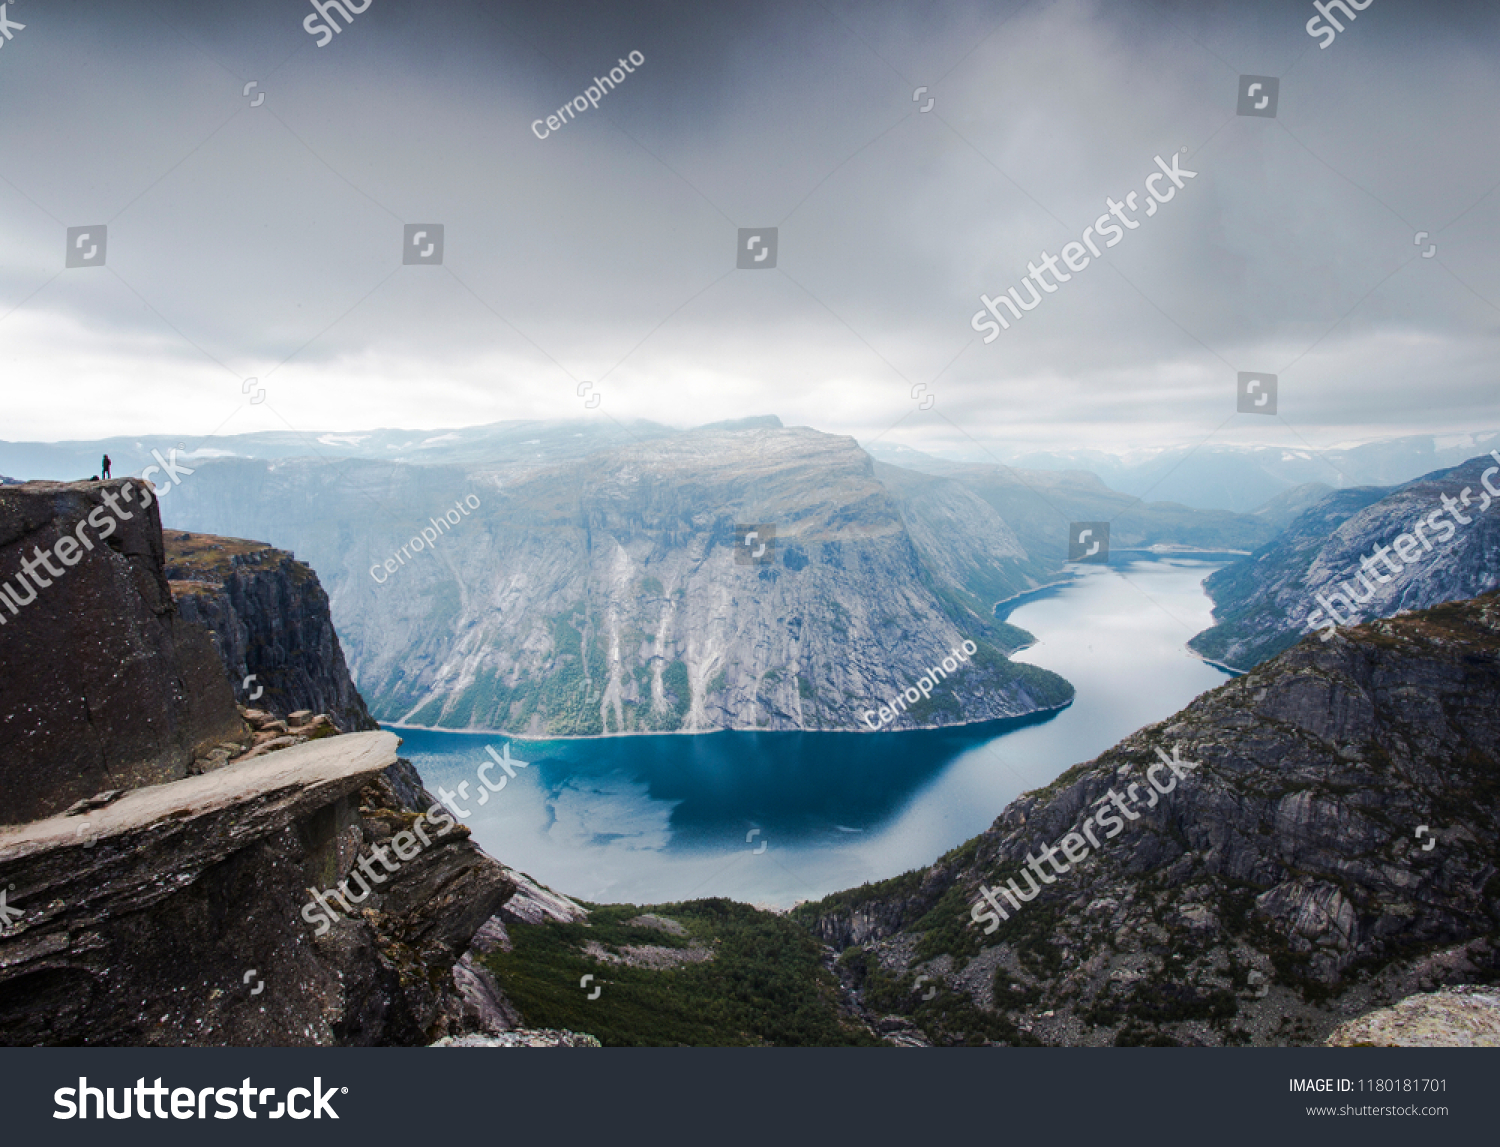 トロルトゥンガの崖と山の間の湖 美しい風景 自然の美しさ 地上の楽園 晴れた日 ノルウェーのオッダ 曇った日 の写真素材 今すぐ編集